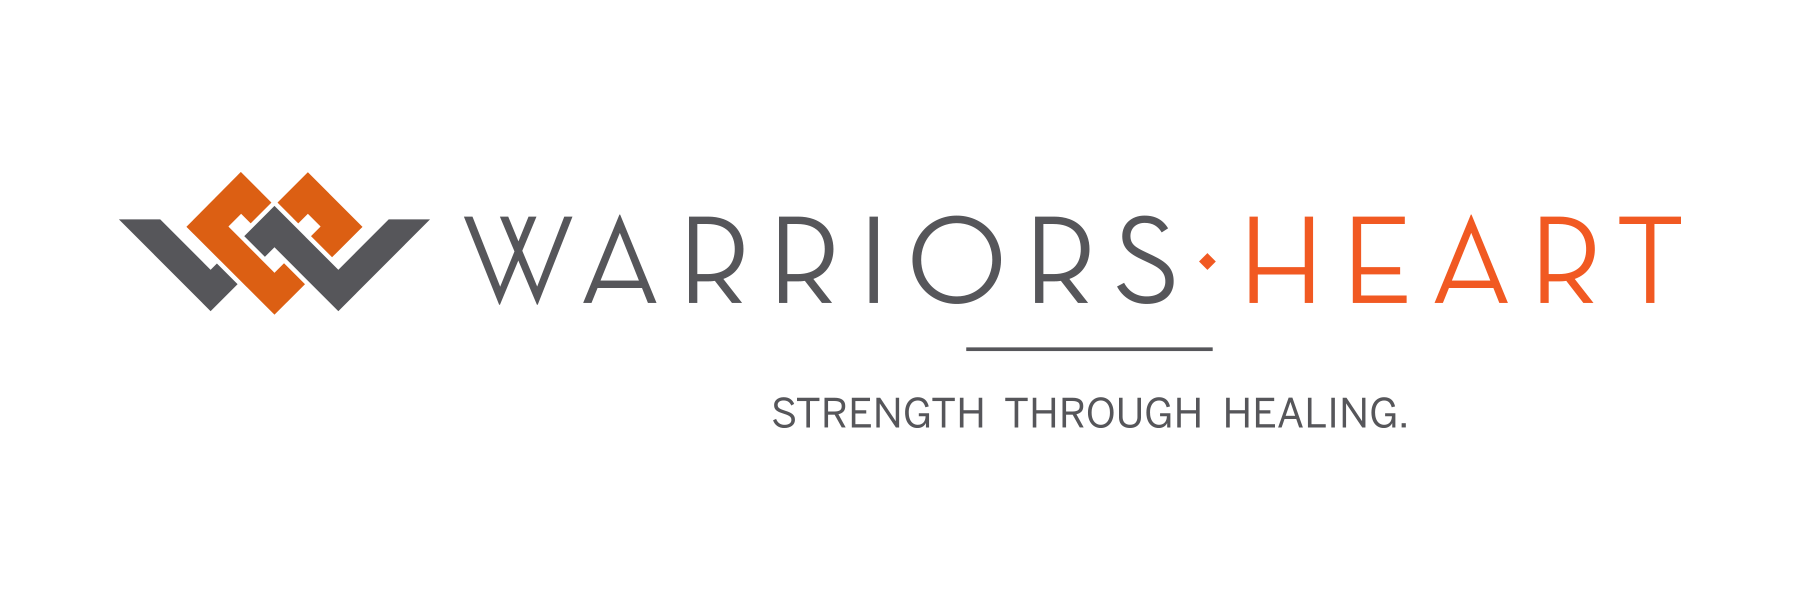 Warriors Heart logo